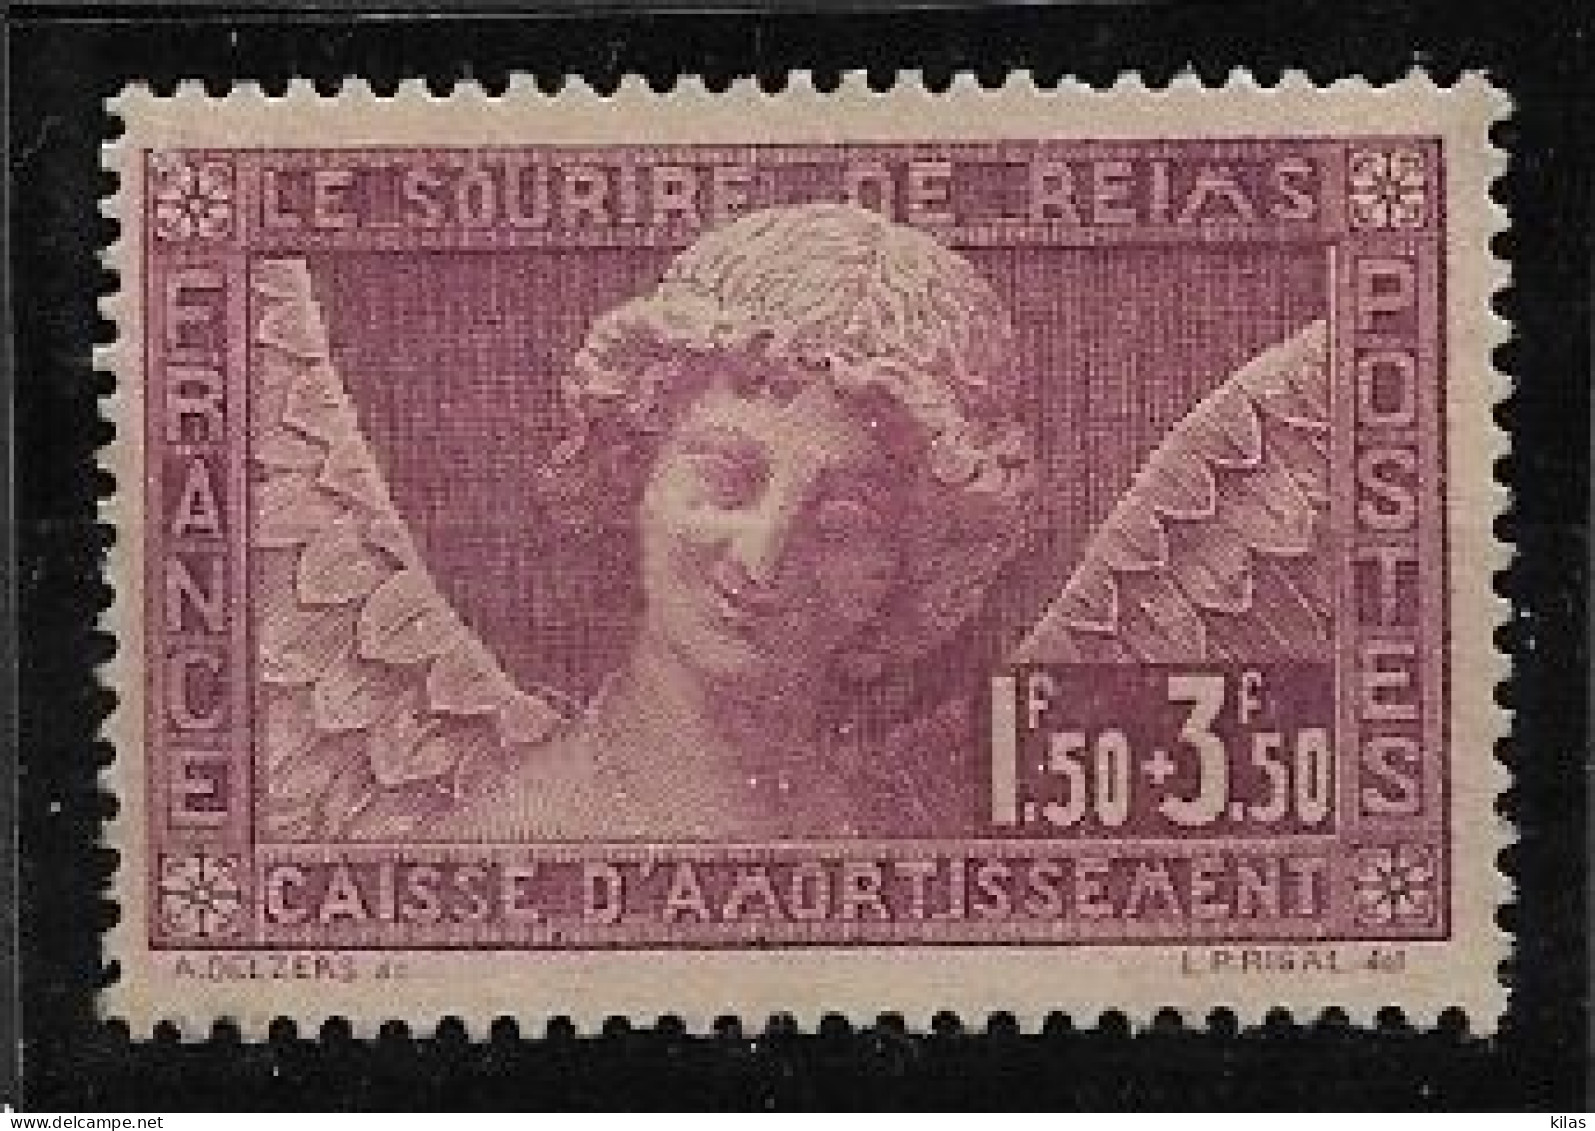 FRANCE 1930 Caisse D'Amortissement "Sourire De Reims" MNH - Ongebruikt